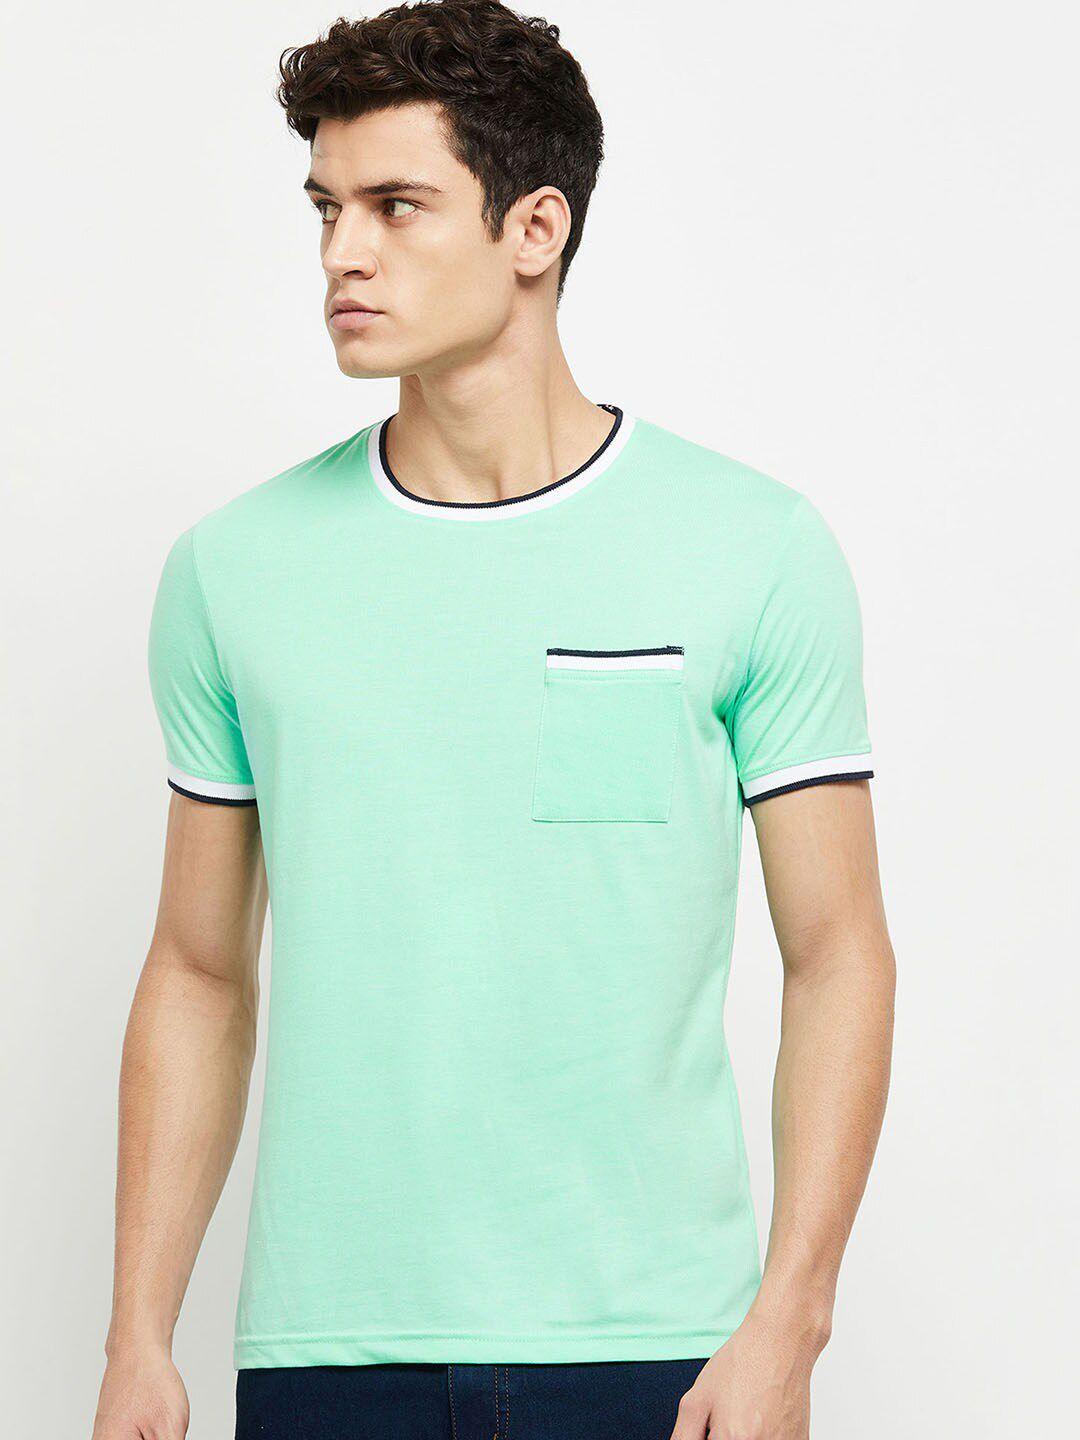 max-men-green-t-shirt